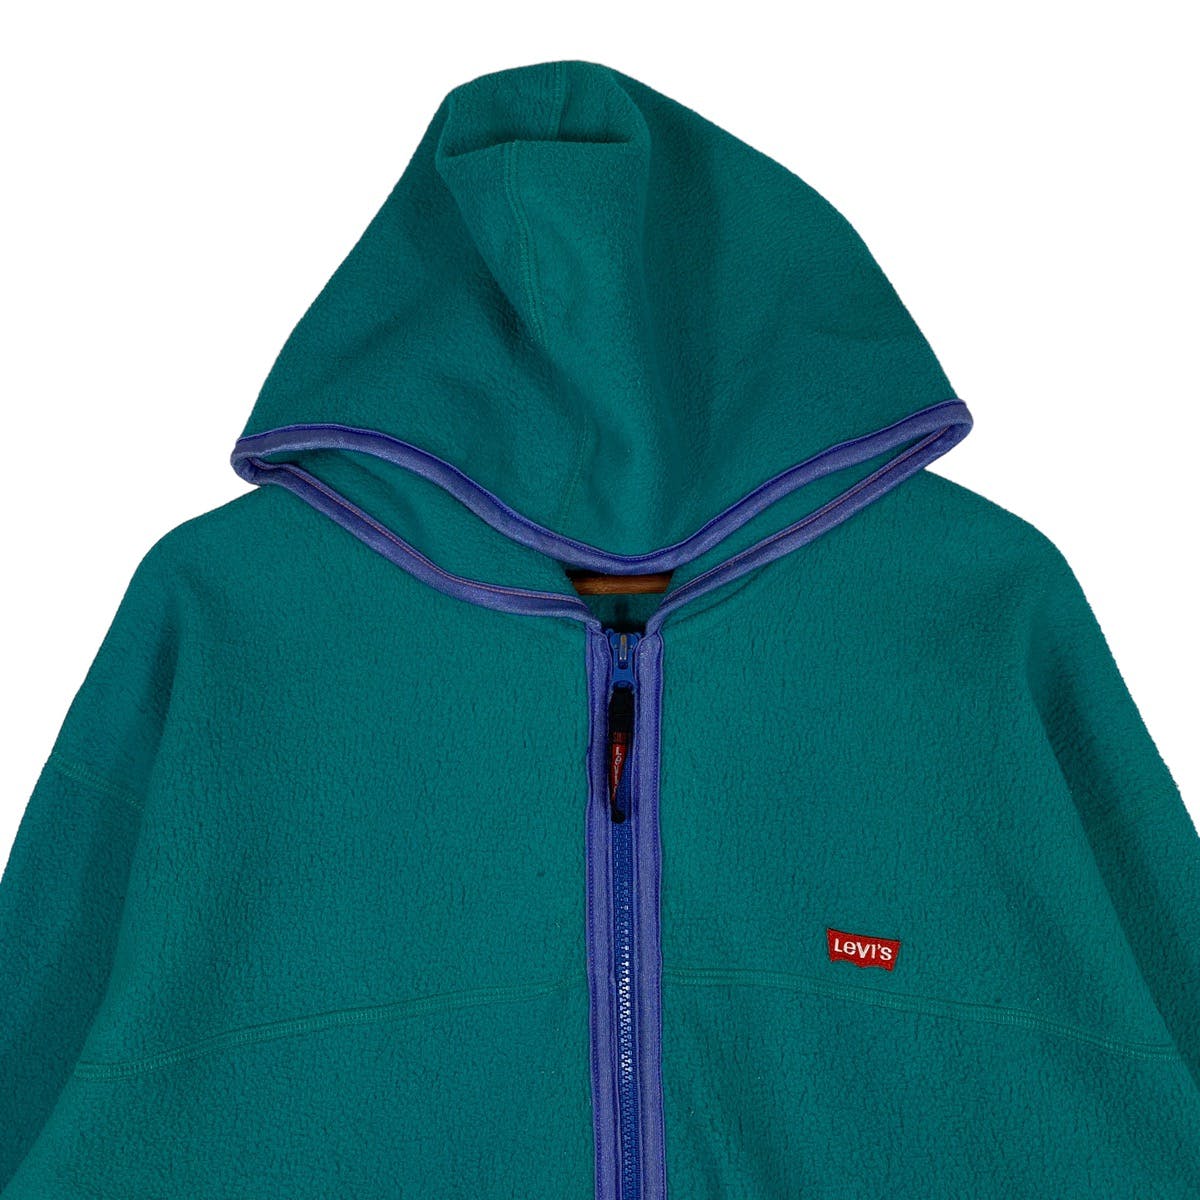 Vintage 90s Levi’s Fleece Full Zip Hoodie Made In Taiwan - 5